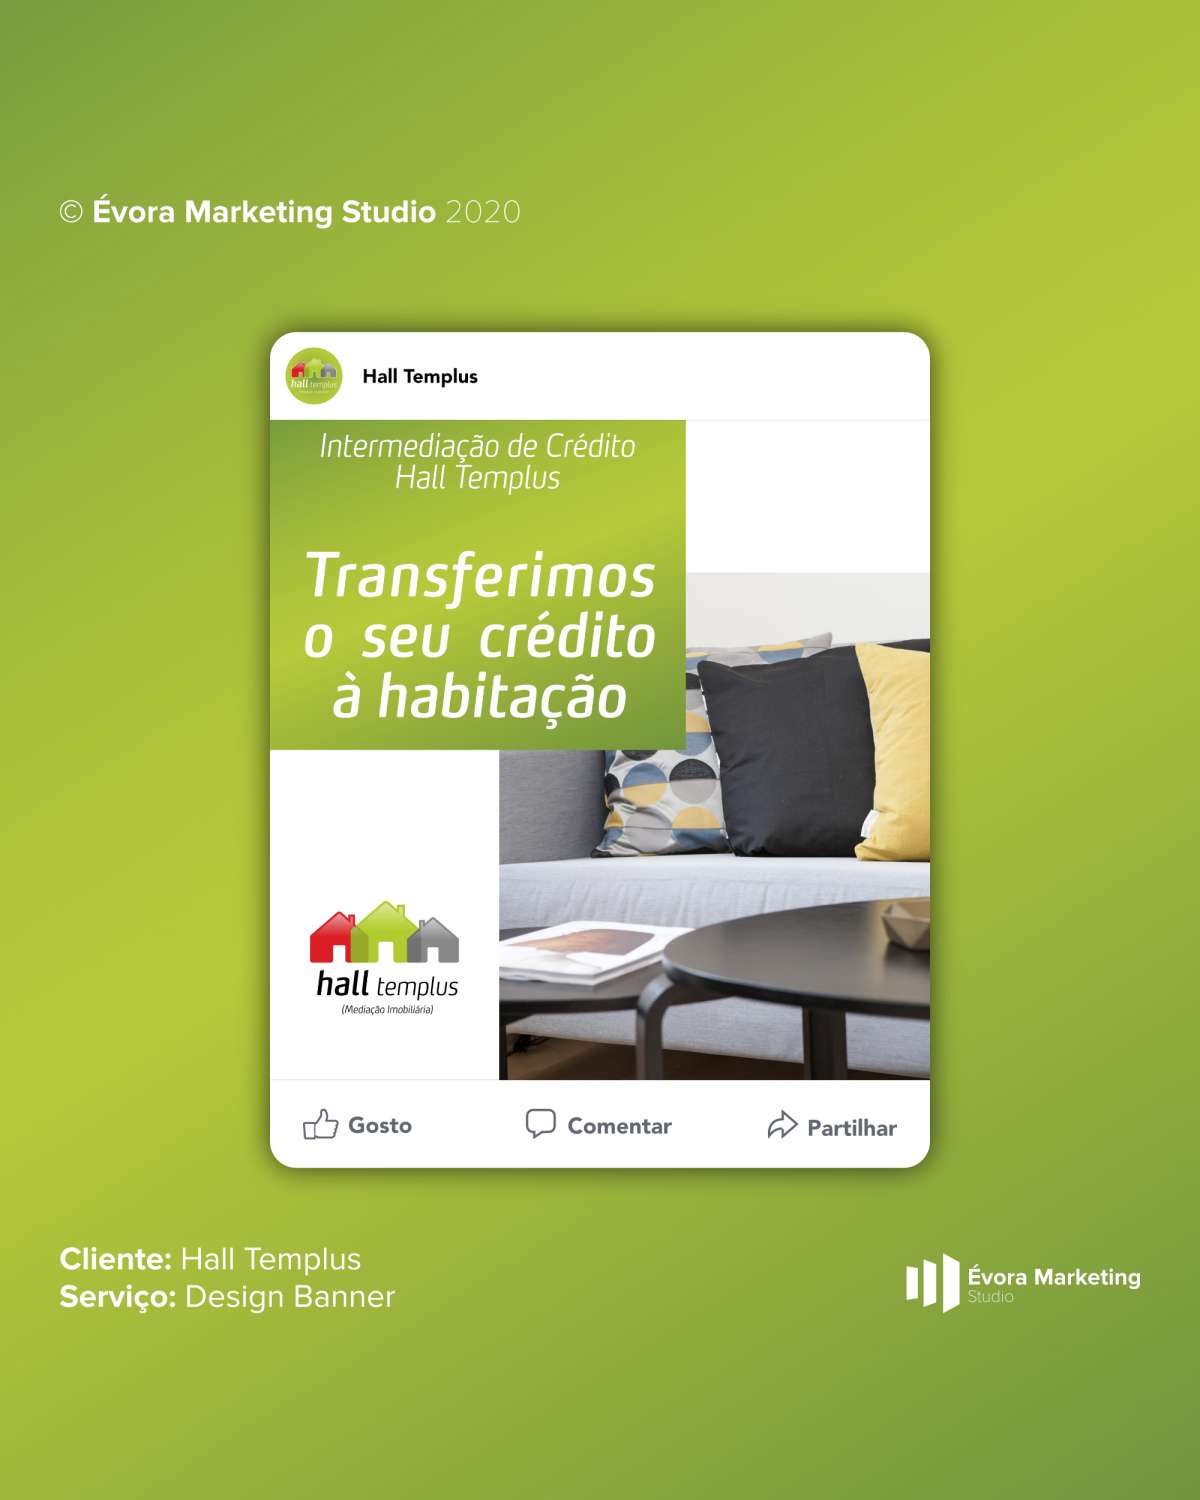 Évora Marketing Studio - Évora - Gestão de Google Ads